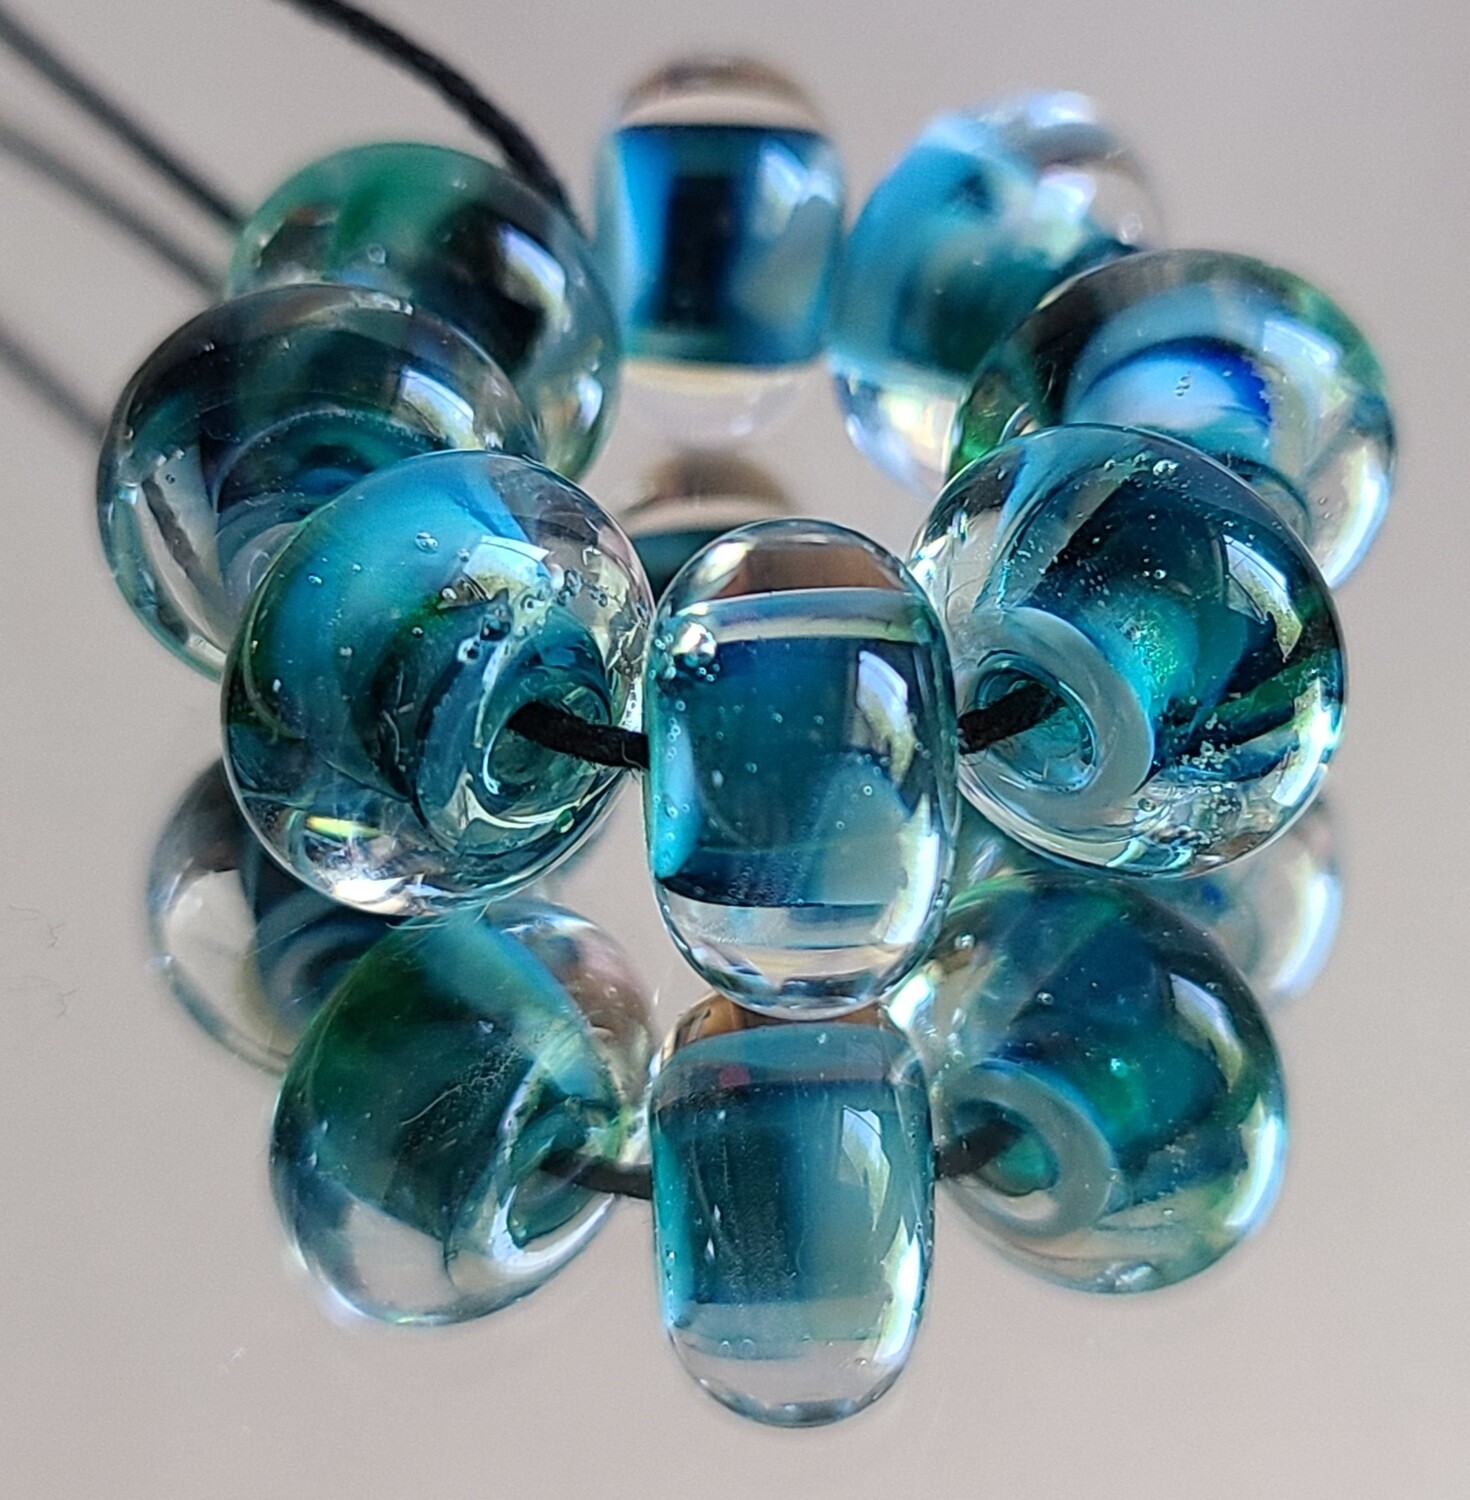 Mystic River Handmade Lampwork Beads